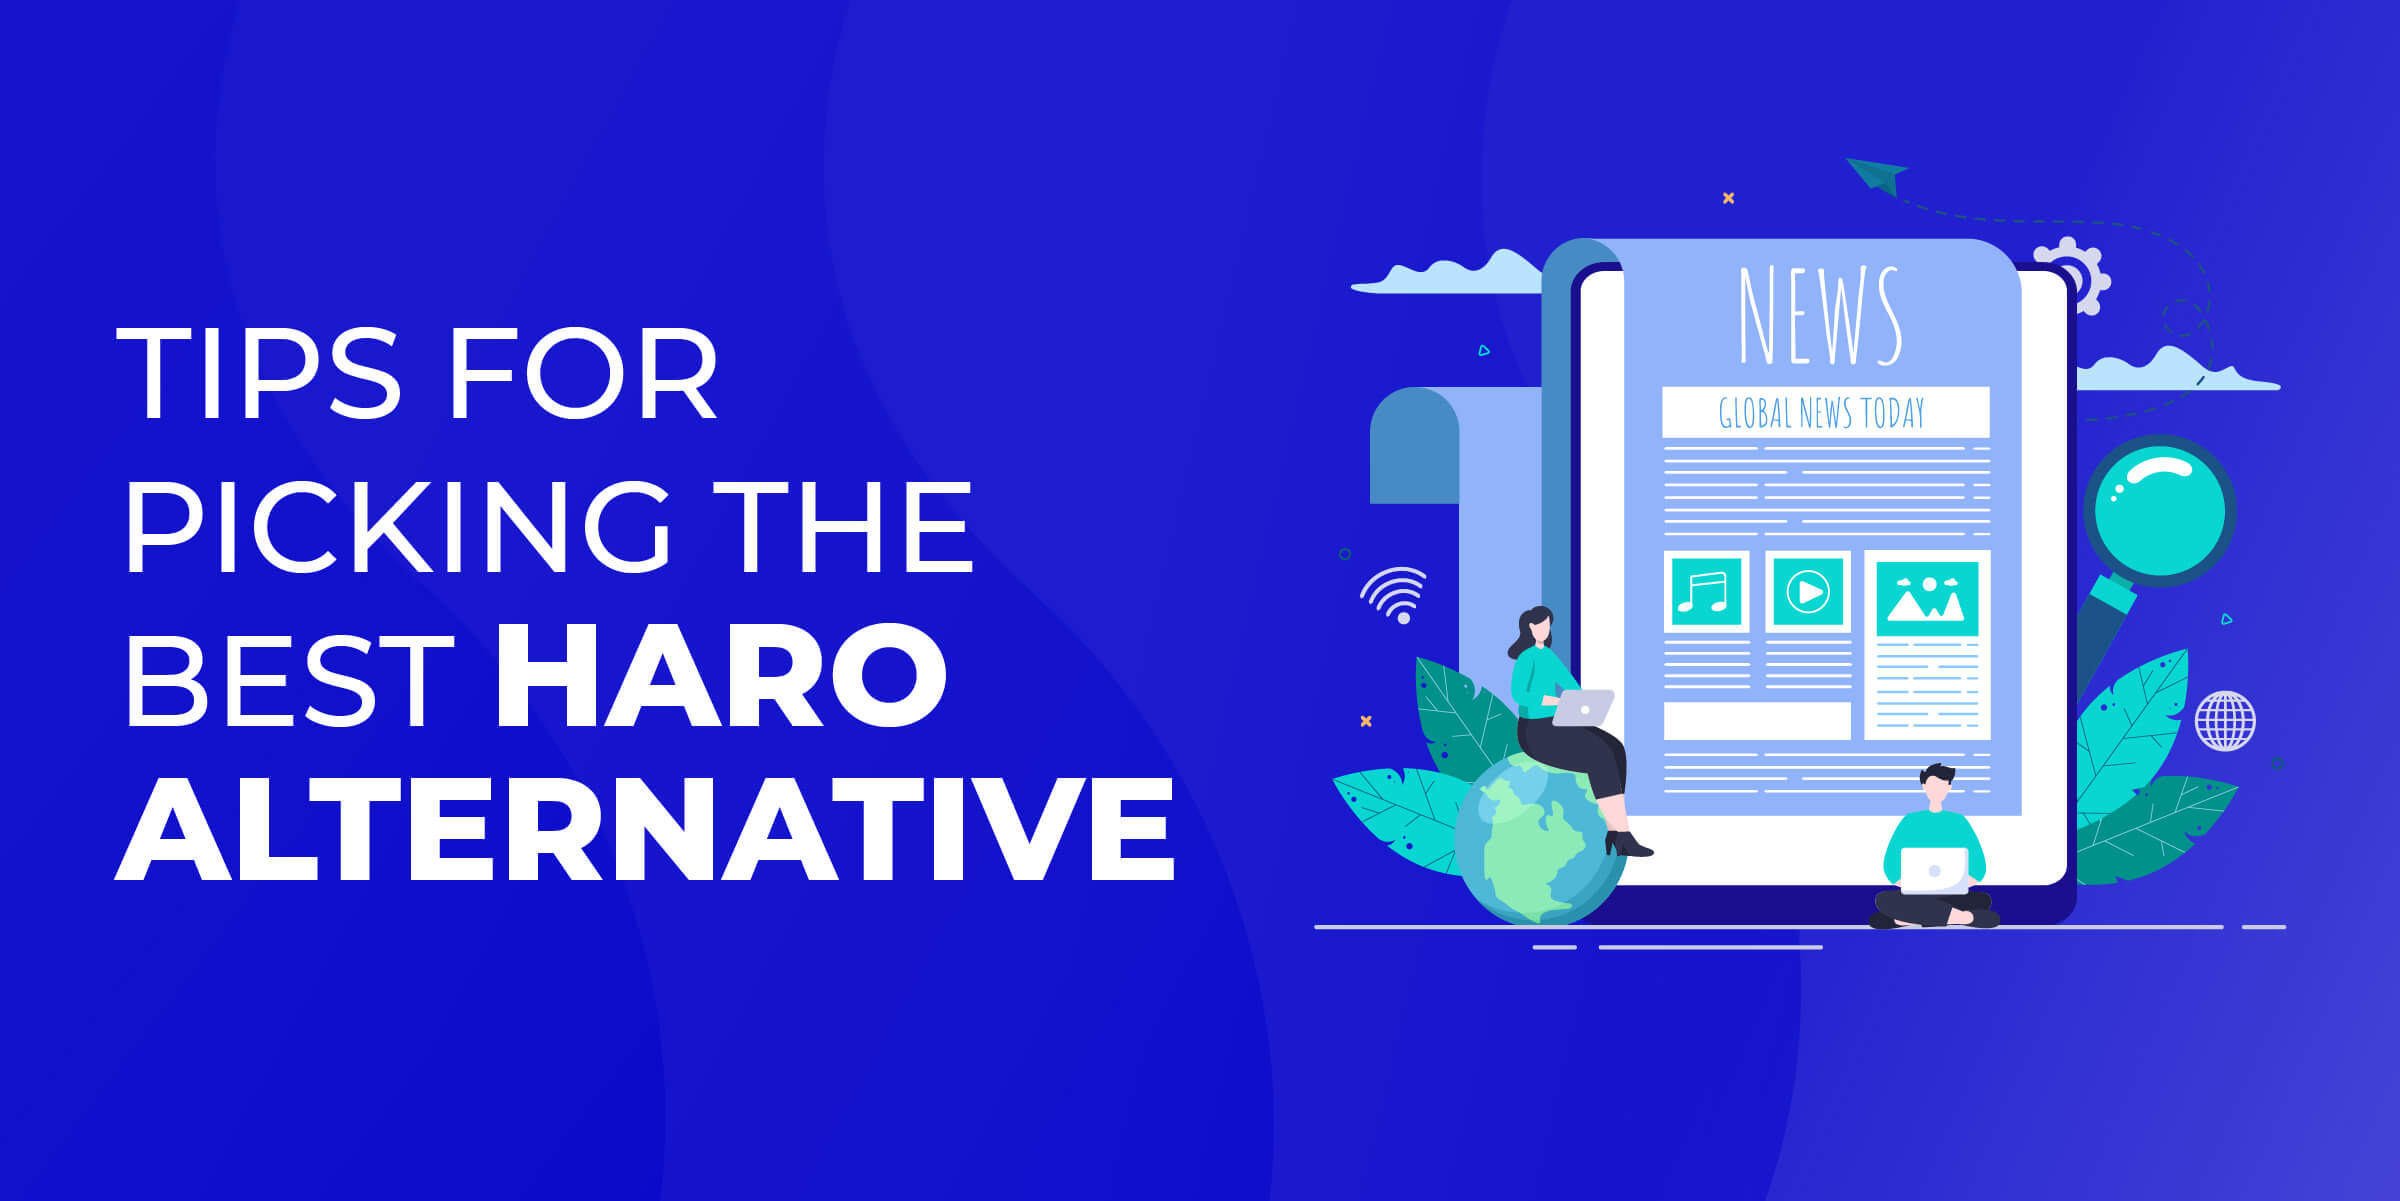 Tips for Picking Best HARO Alternative